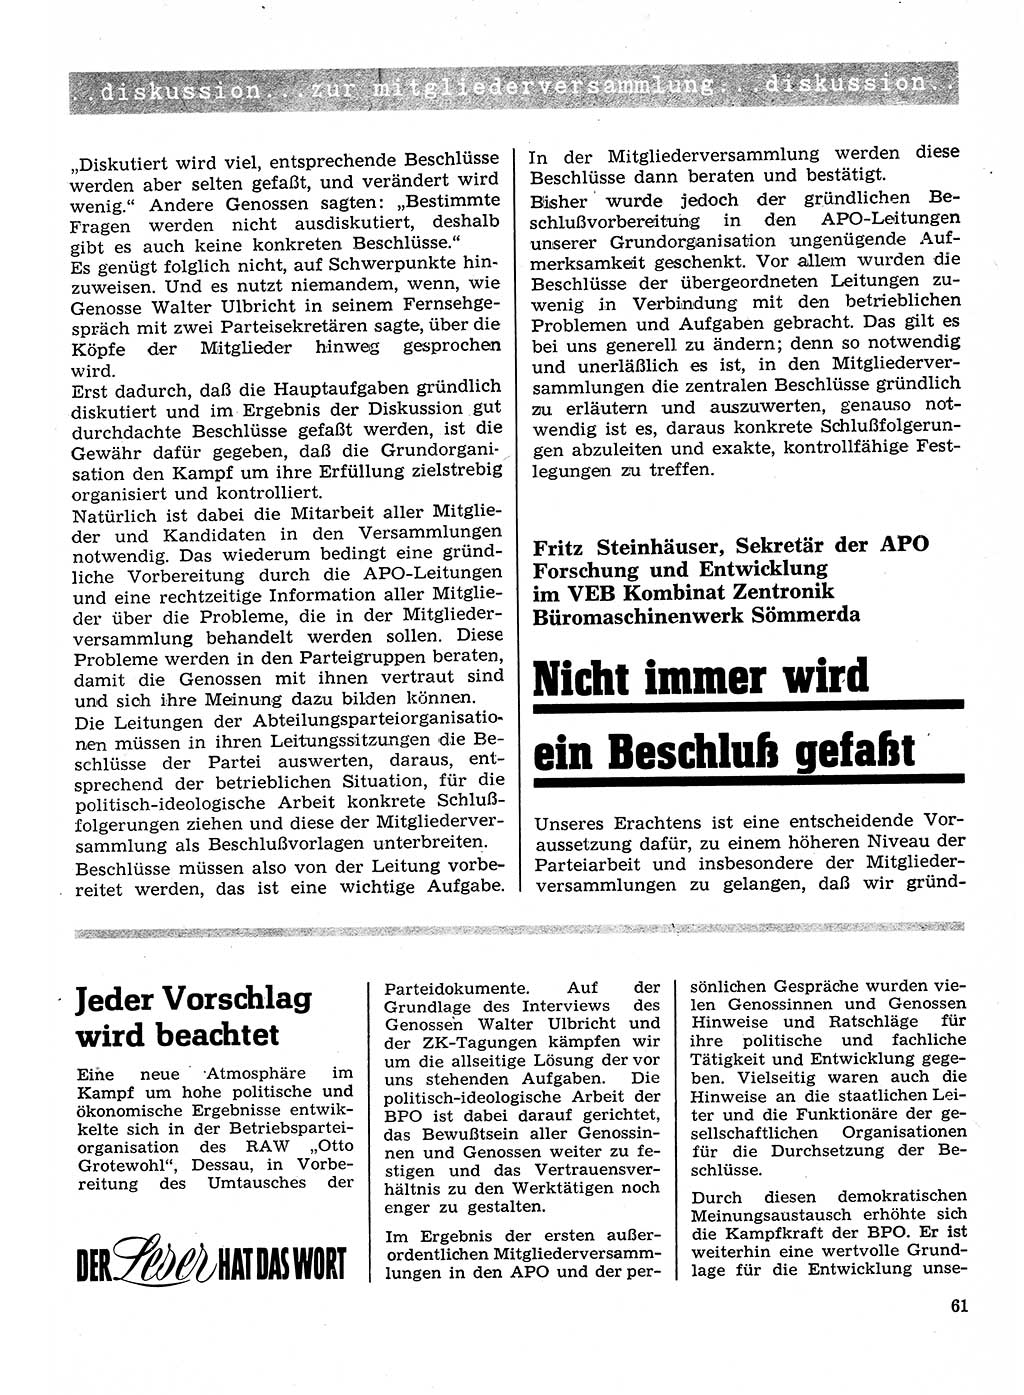 Neuer Weg (NW), Organ des Zentralkomitees (ZK) der SED (Sozialistische Einheitspartei Deutschlands) für Fragen des Parteilebens, 26. Jahrgang [Deutsche Demokratische Republik (DDR)] 1971, Seite 61 (NW ZK SED DDR 1971, S. 61)